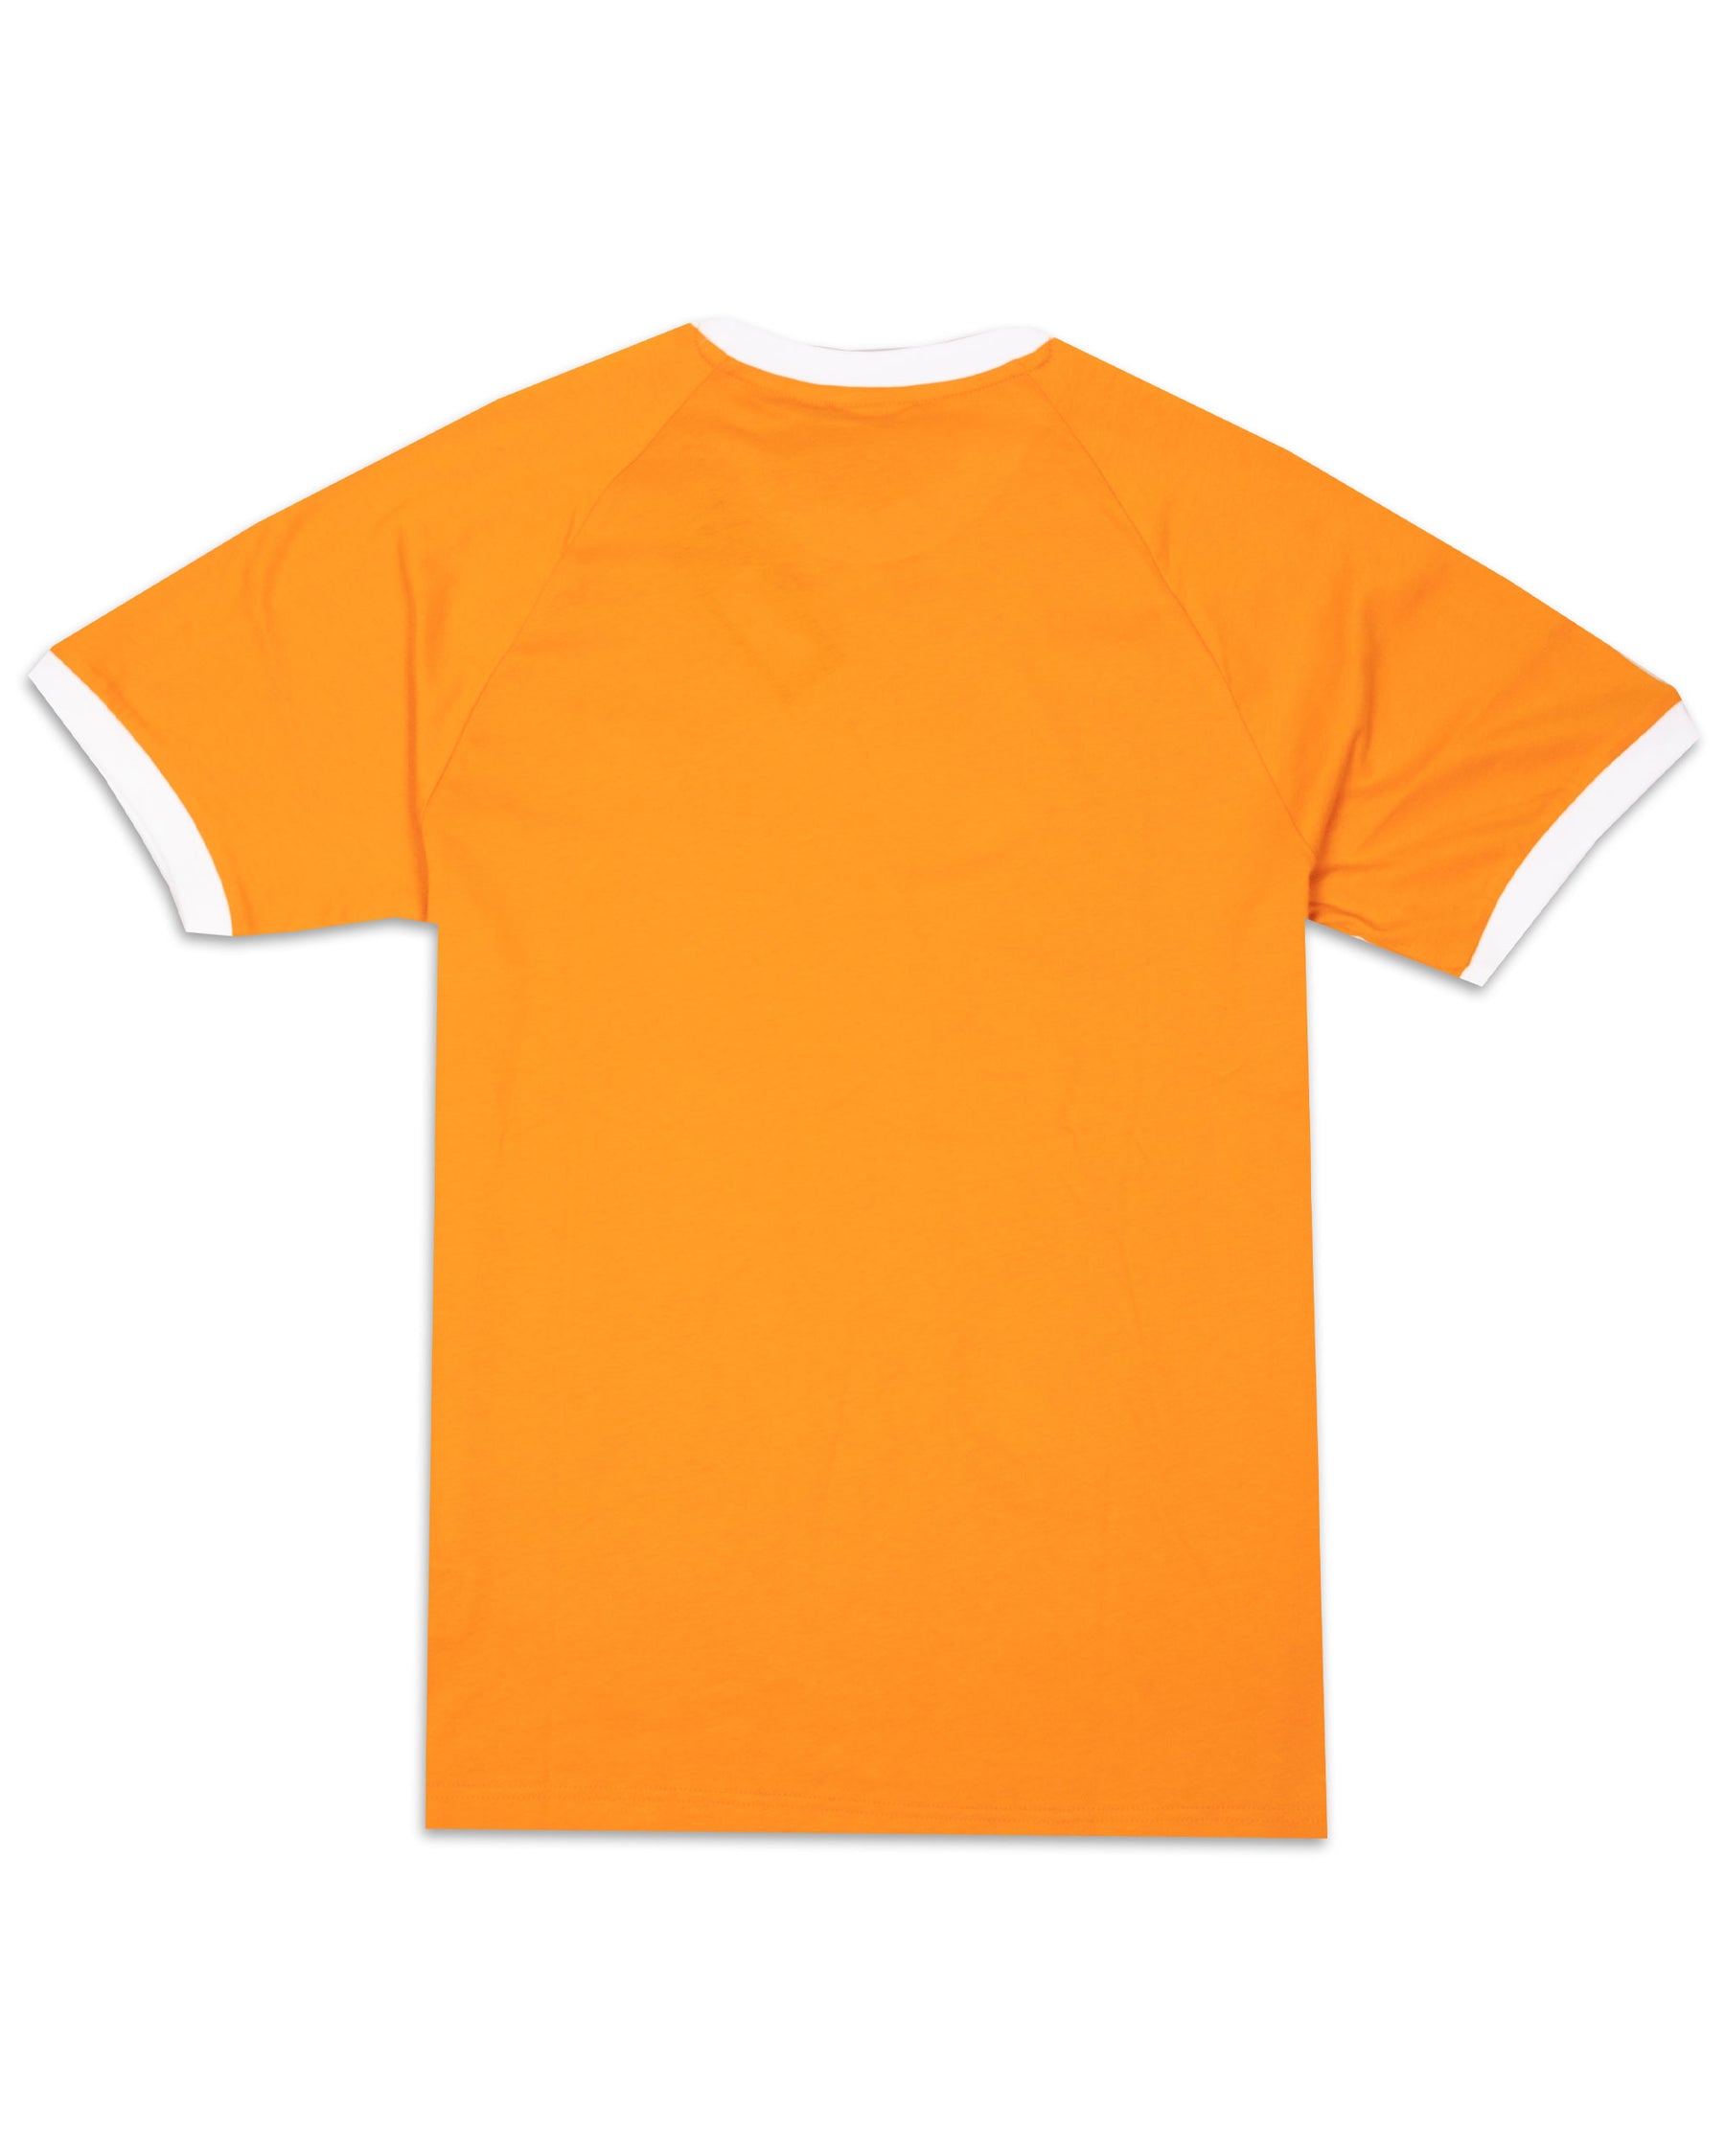 T-Shirt Uomo Adidas 3 Stripes Arancione